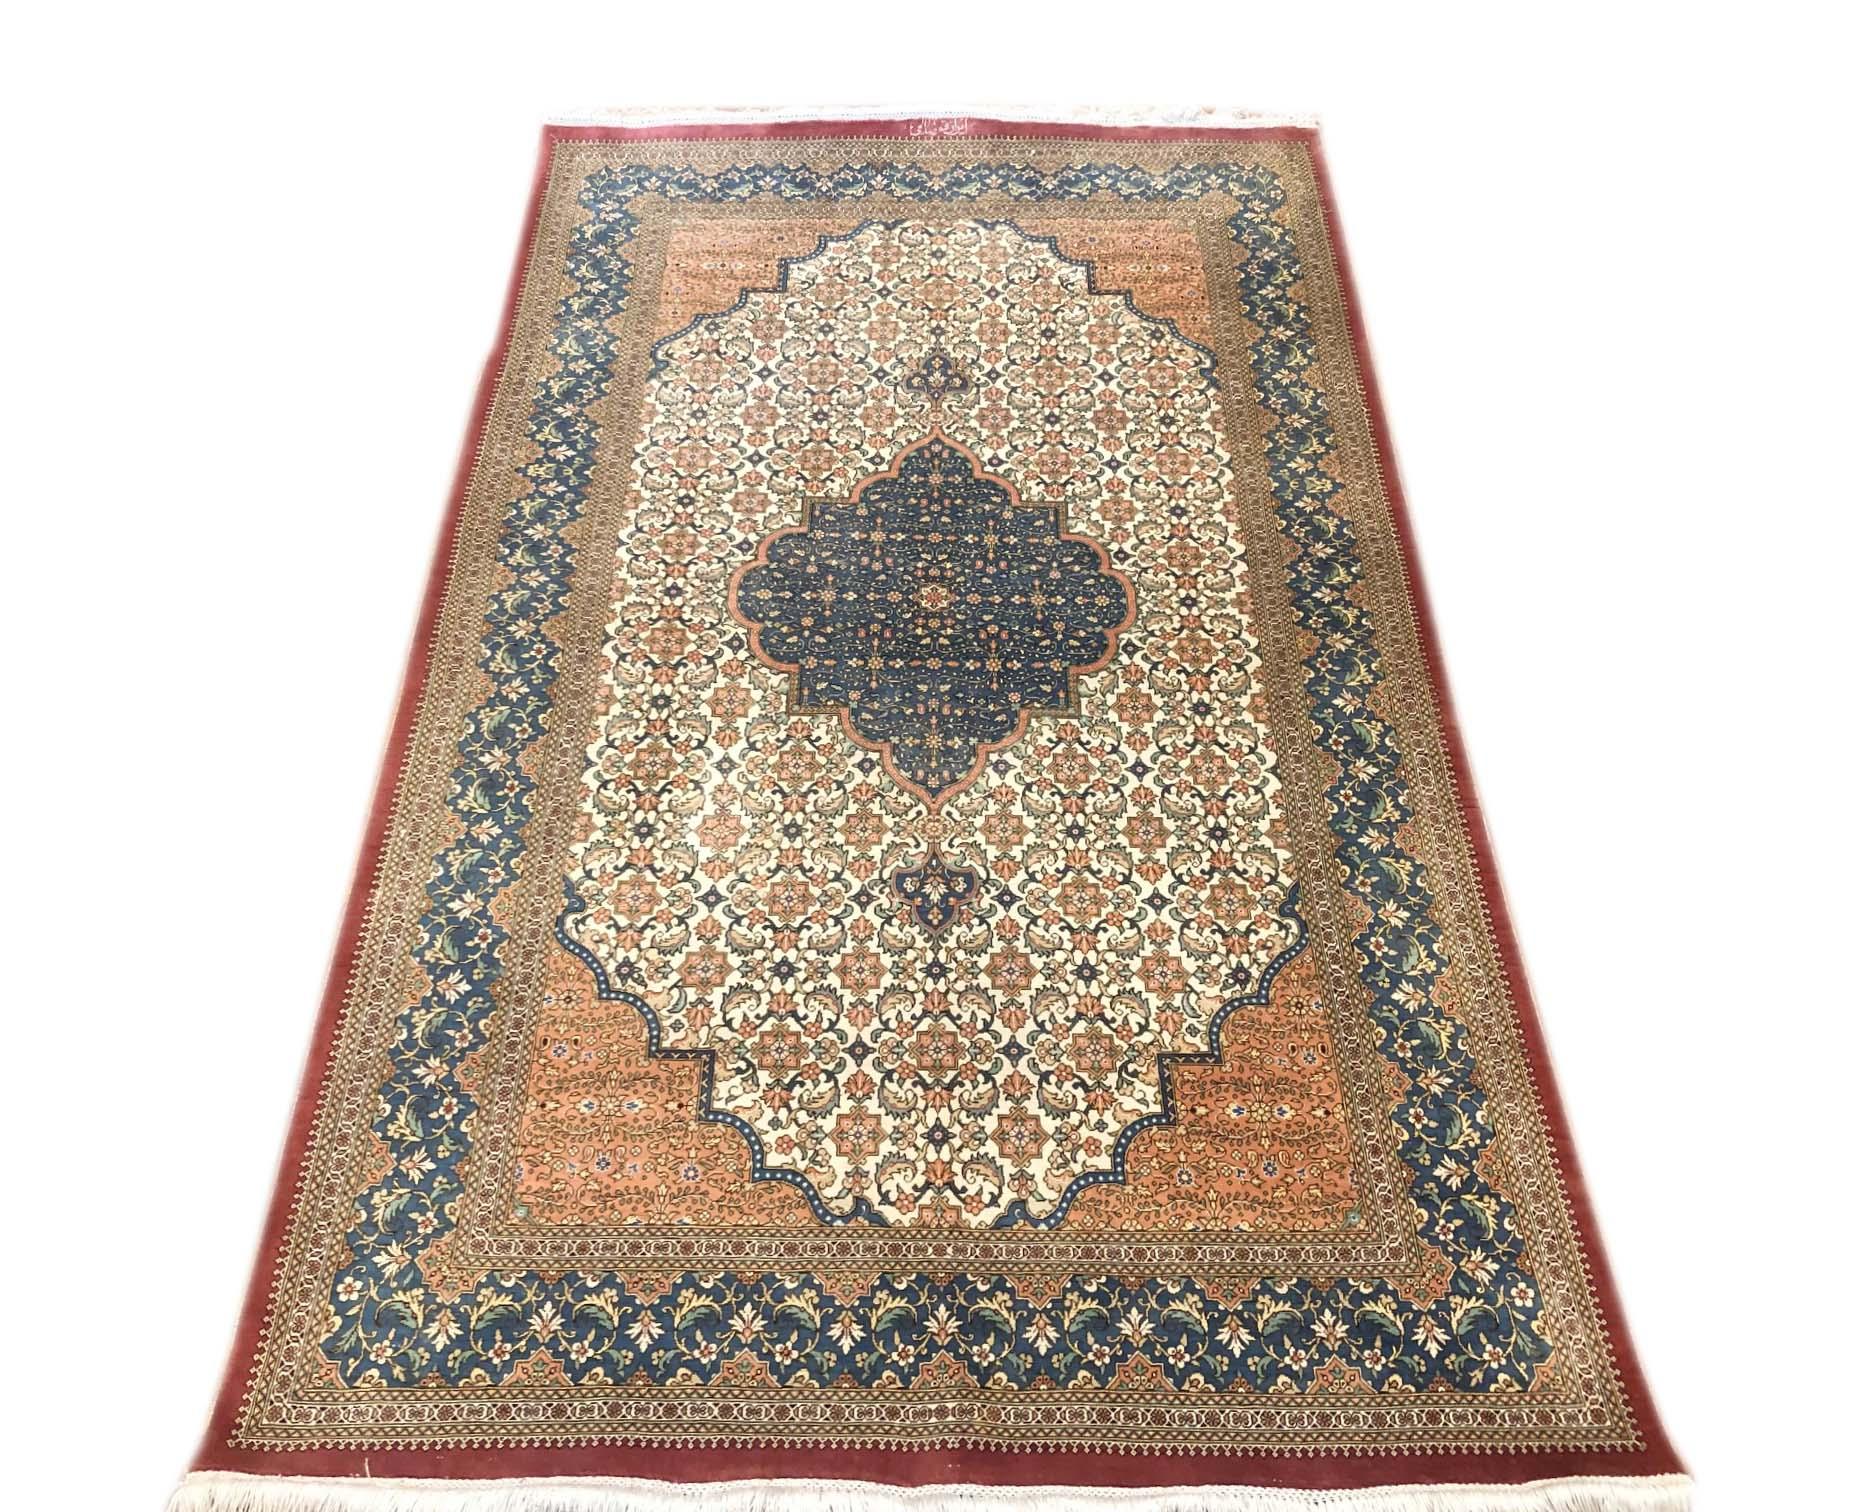 Cet authentique tapis persan Qum a des poils en soie et une base en soie en excellent état. La combinaison de couleurs de ce tapis est absolument remarquable. La couleur de base est la crème et la bordure est bleue. Le motif de cette pièce est un